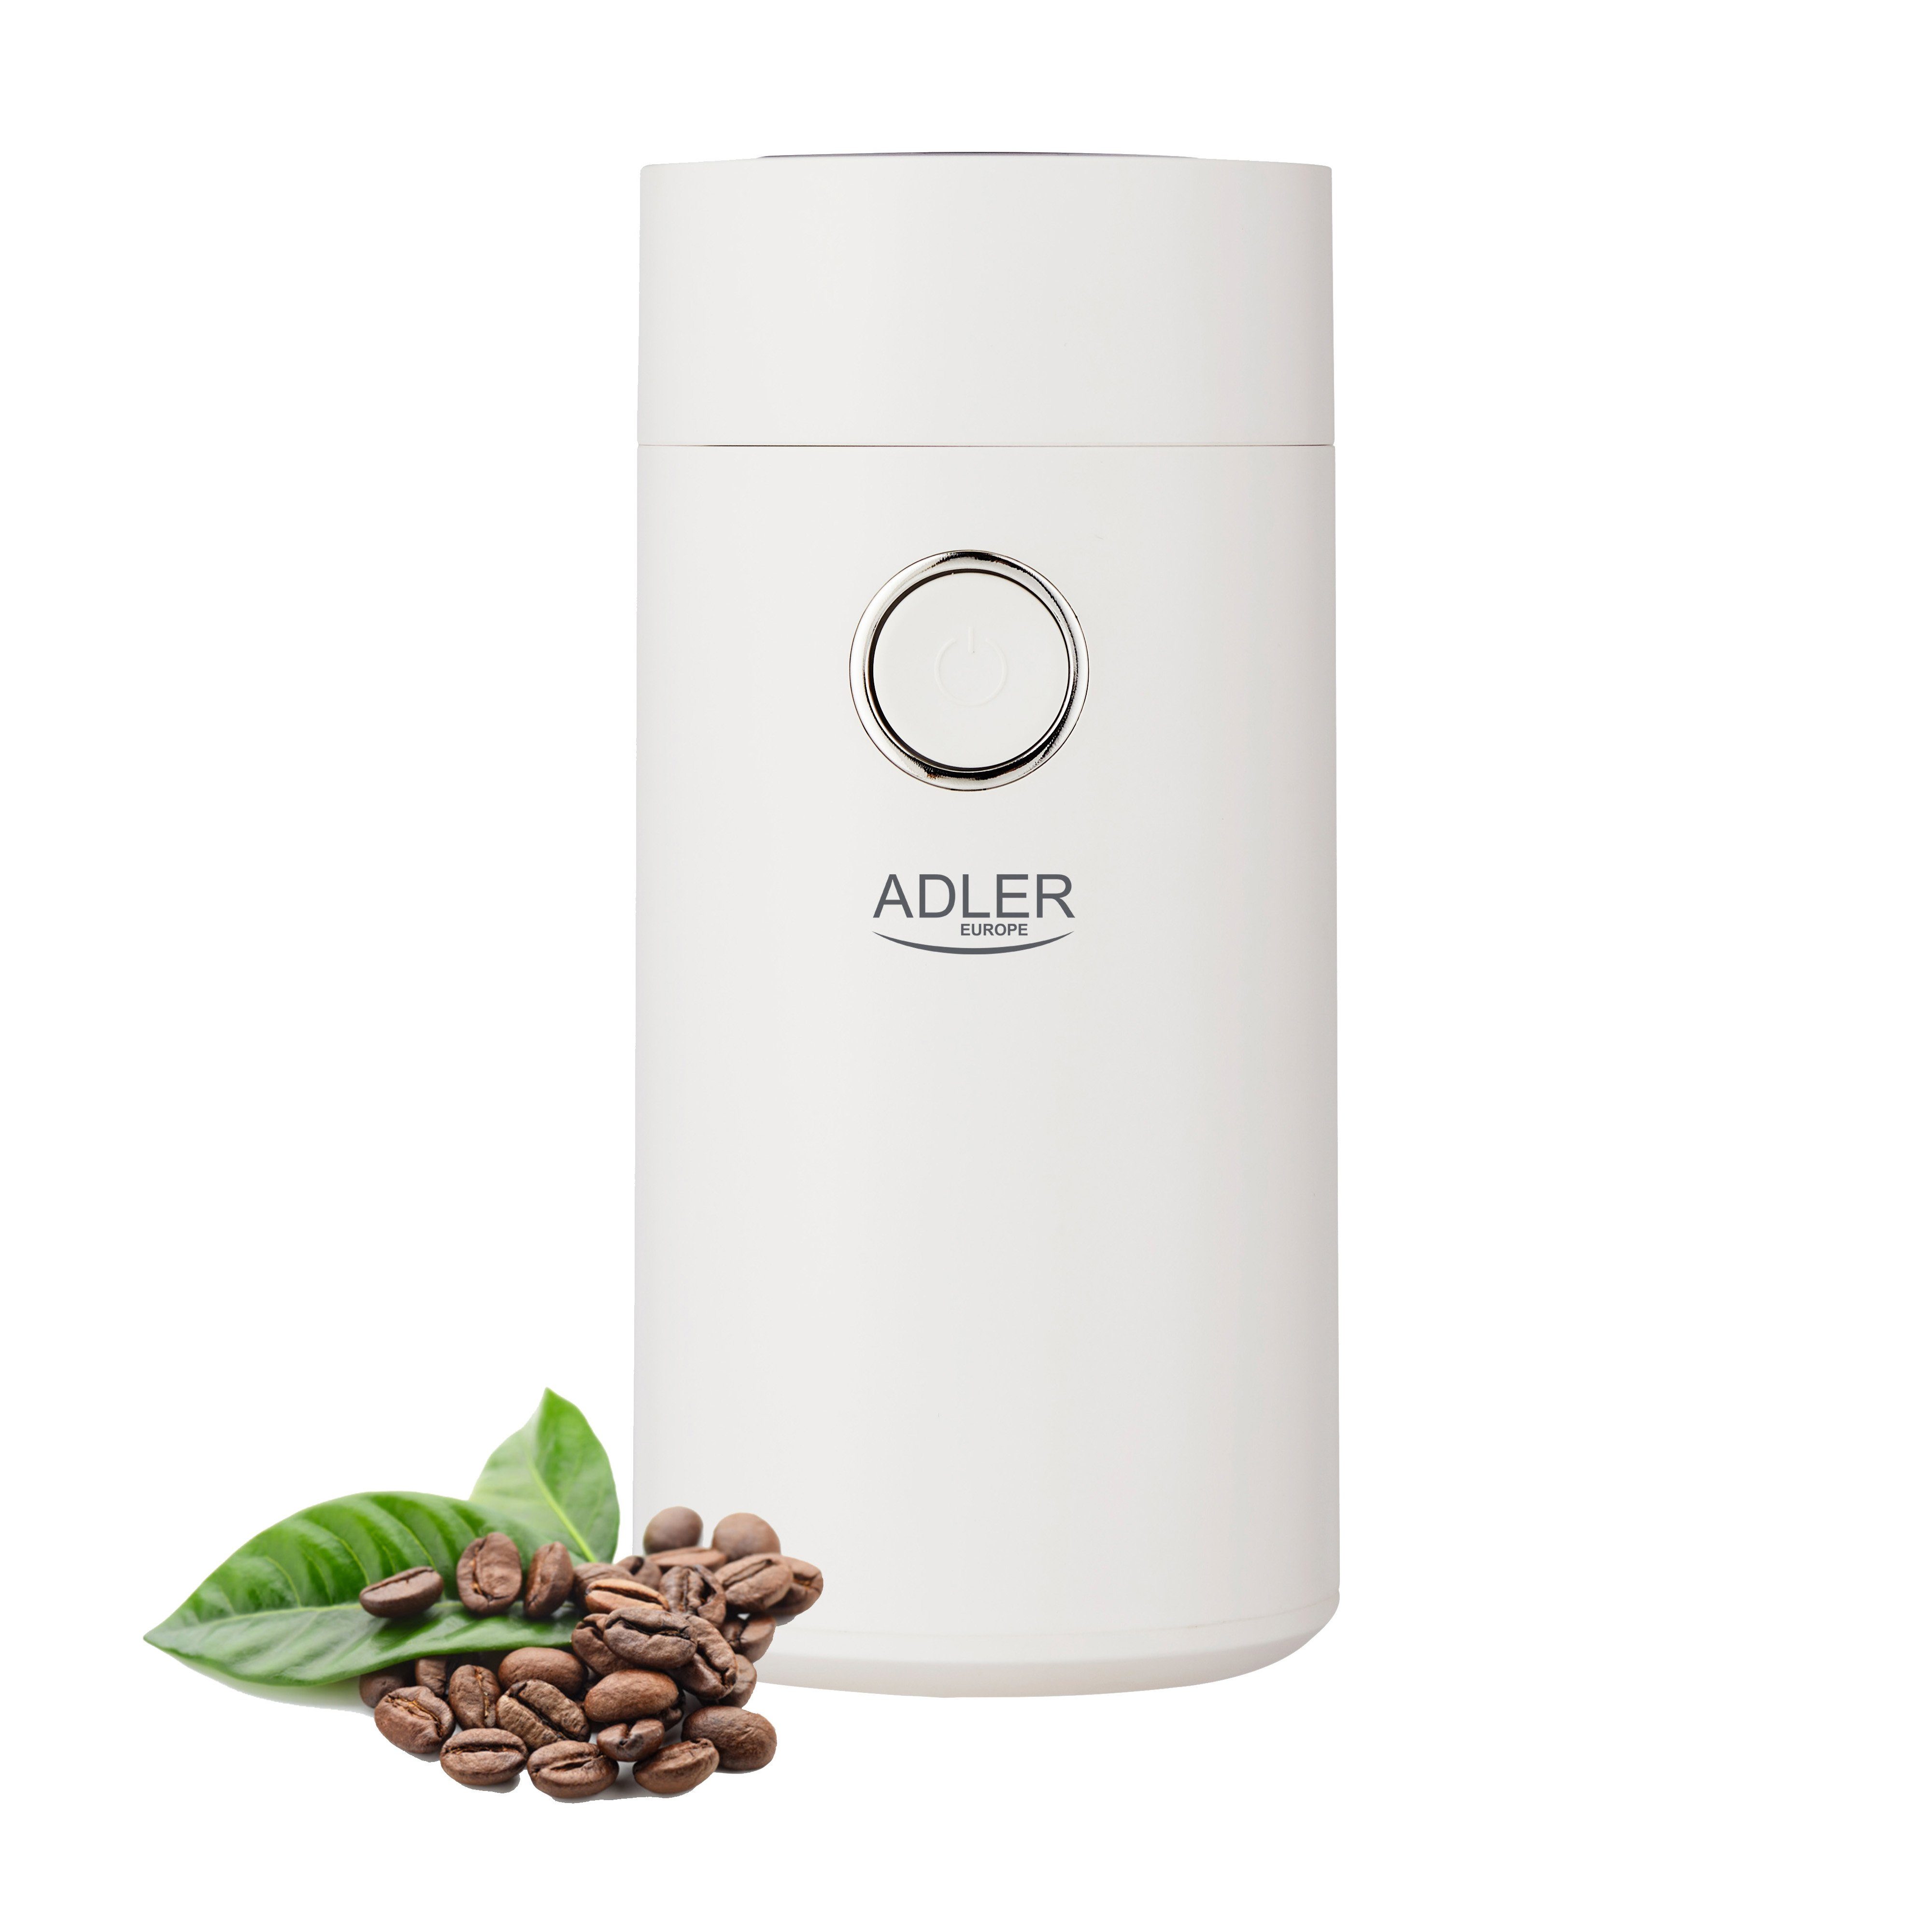 Adler Kaffeemühle AD 4446ws, 150Watt, 75g, elektrische Kaffeemühle,  Gewürzmühle, Chillimühle, weiß/silber online kaufen | OTTO